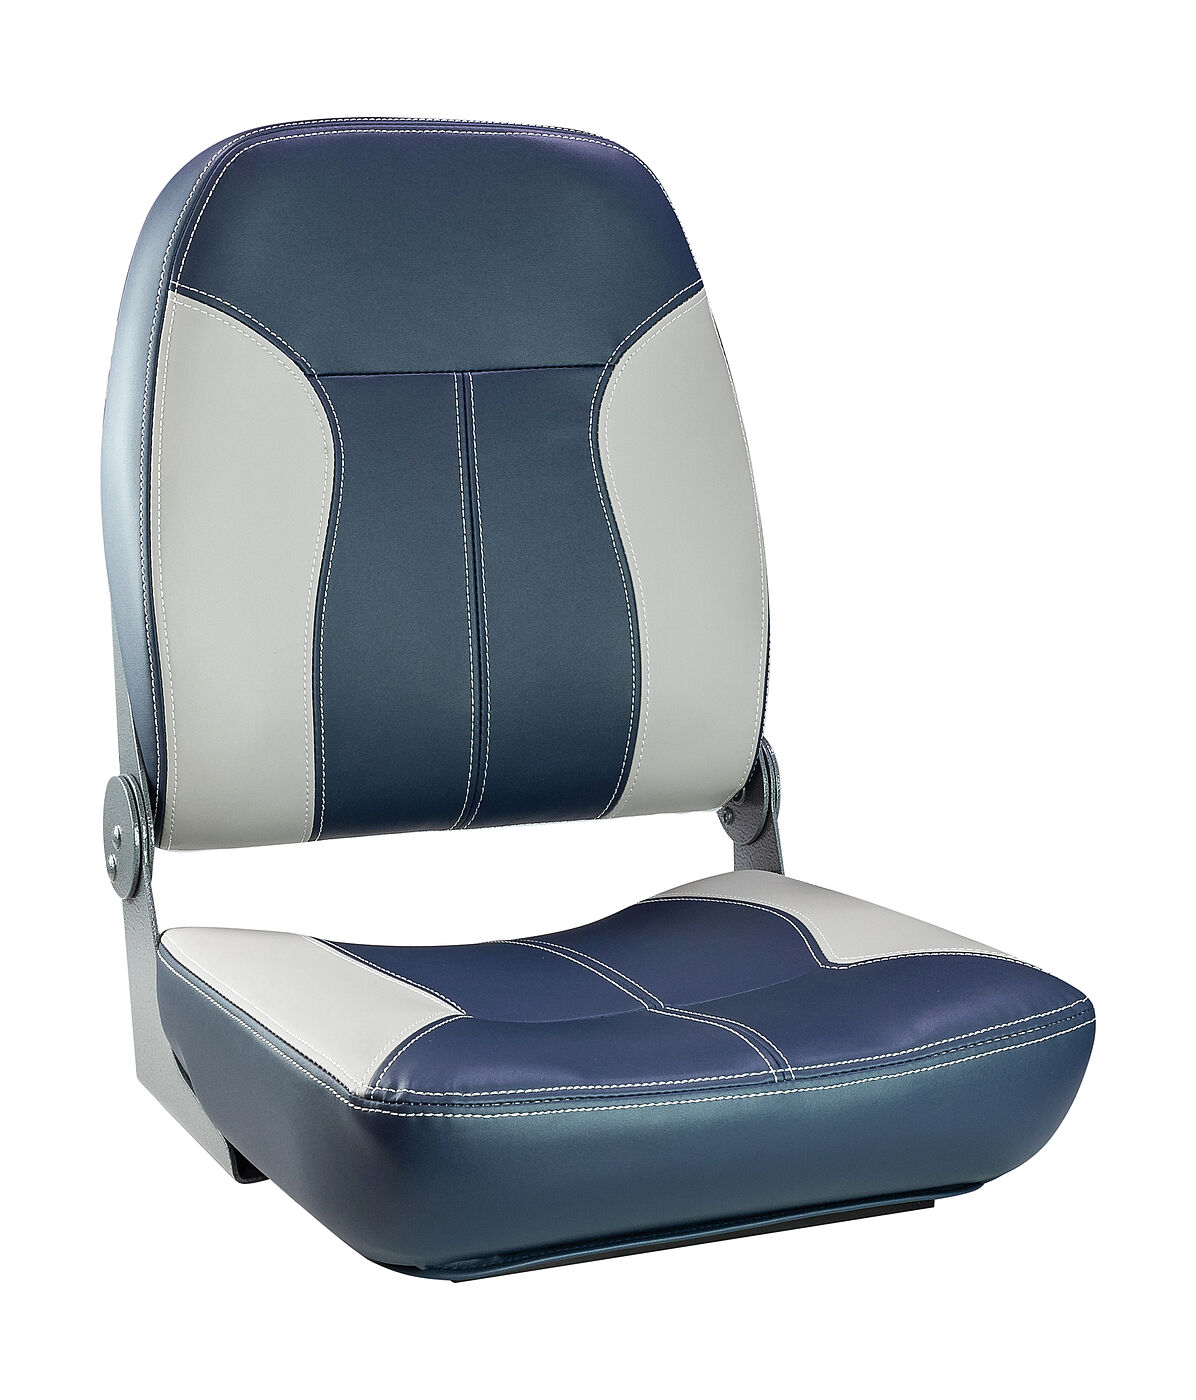 Кресло складное мягкое SPORT с высокой спинкой, синий/серый, 889-7765